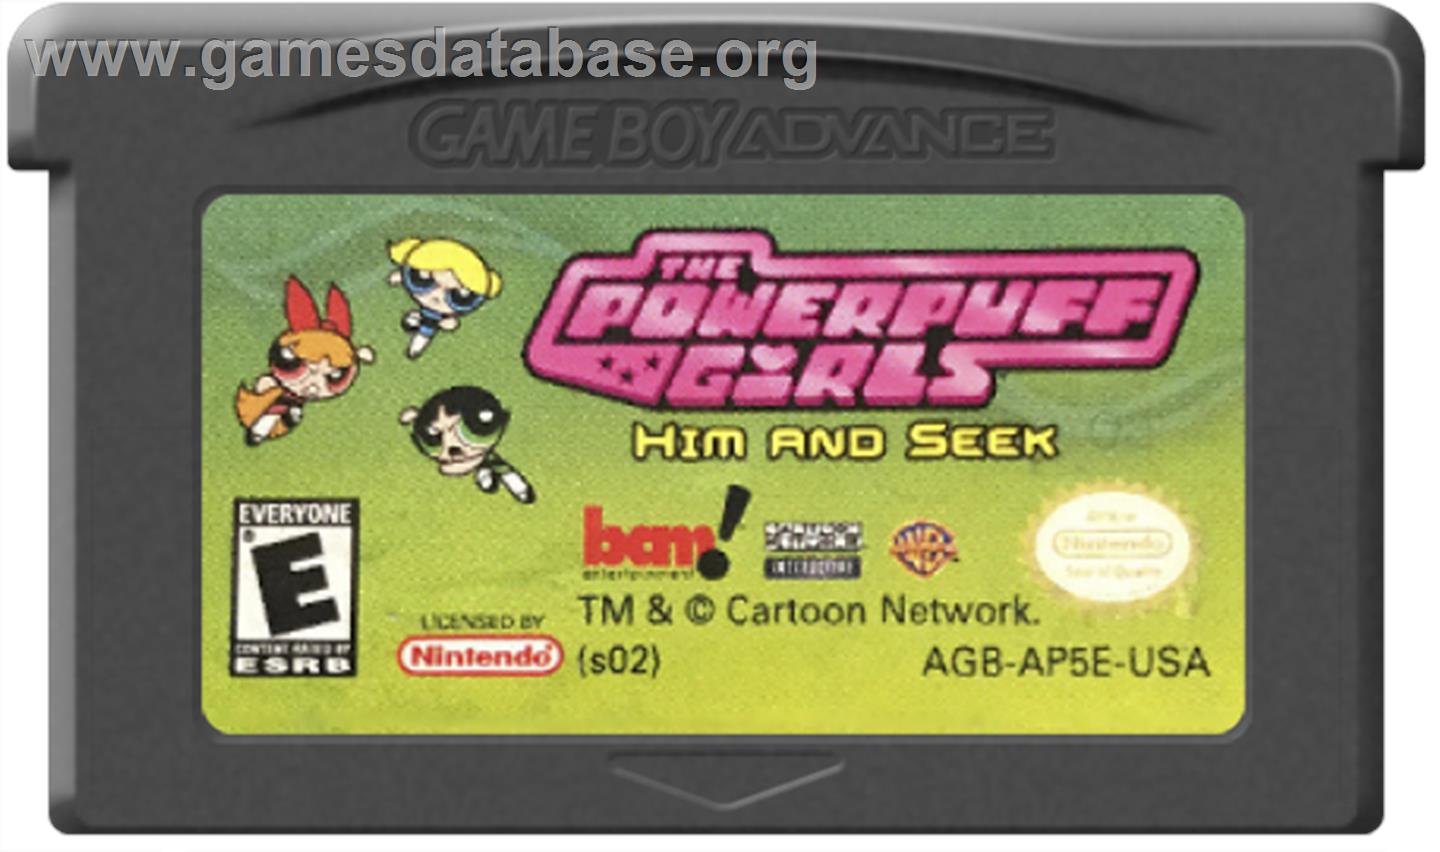 Powerpuff Girls: Him and Seek - Nintendo Game Boy Advance - Artwork - Cartridge